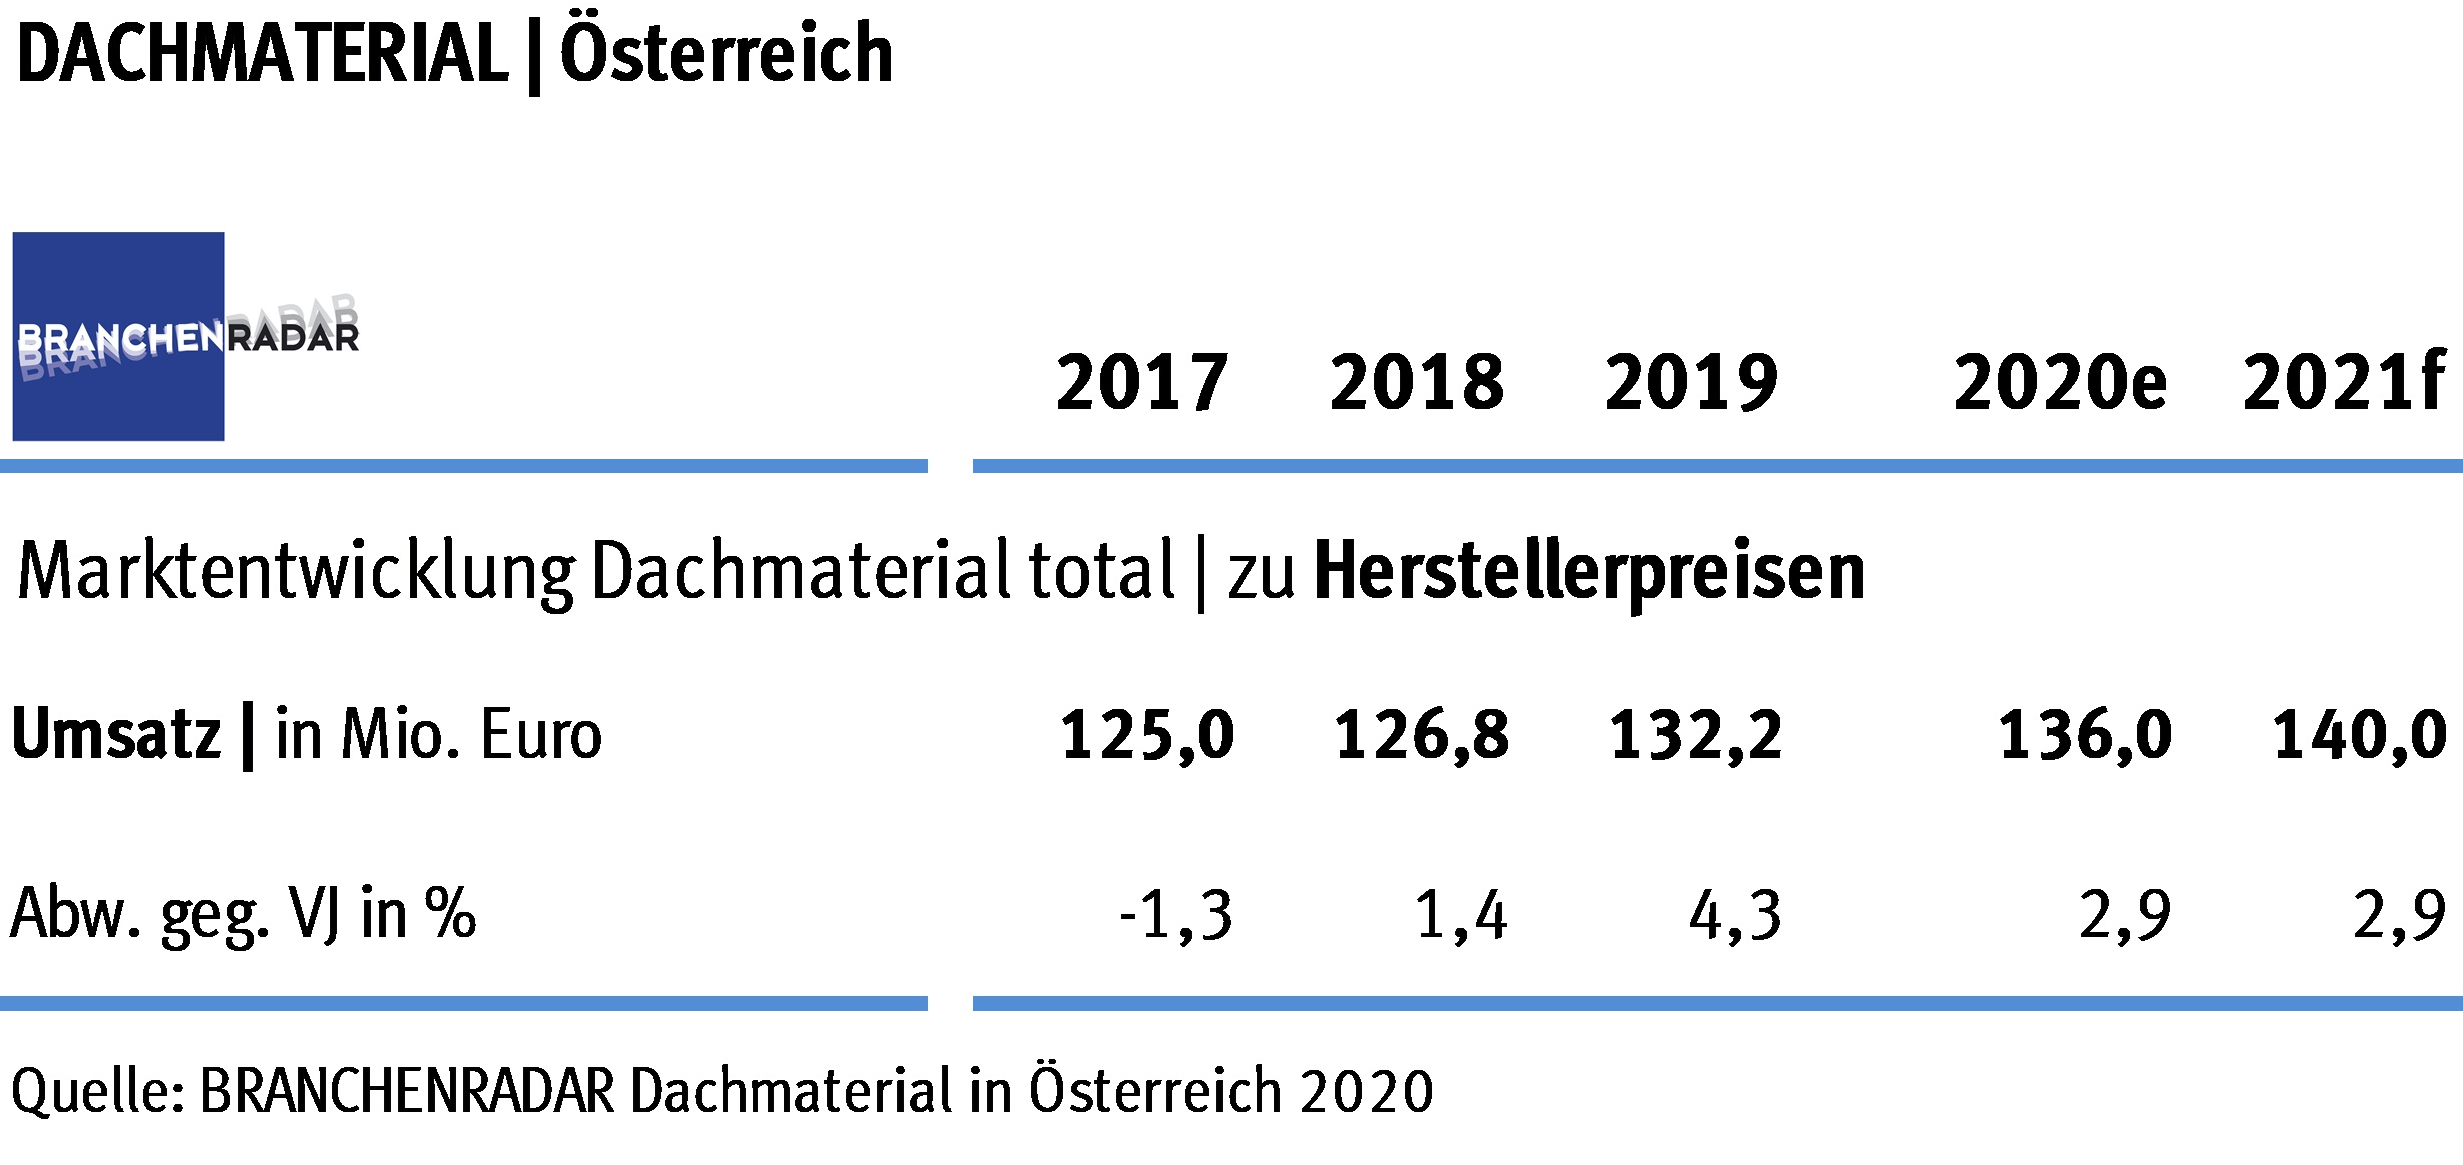 Der Markt für Dachmaterial nahm in Österreich im Jahr 2019 deutlich an Fahrt auf. Wachstumsbeiträge kamen auch wieder aus der Sanierung, zeigen aktuelle Daten einer Marktstudie zu Dachmaterial des Marktforschungsinstituts BRANCHENRADAR.com Marktanalyse.